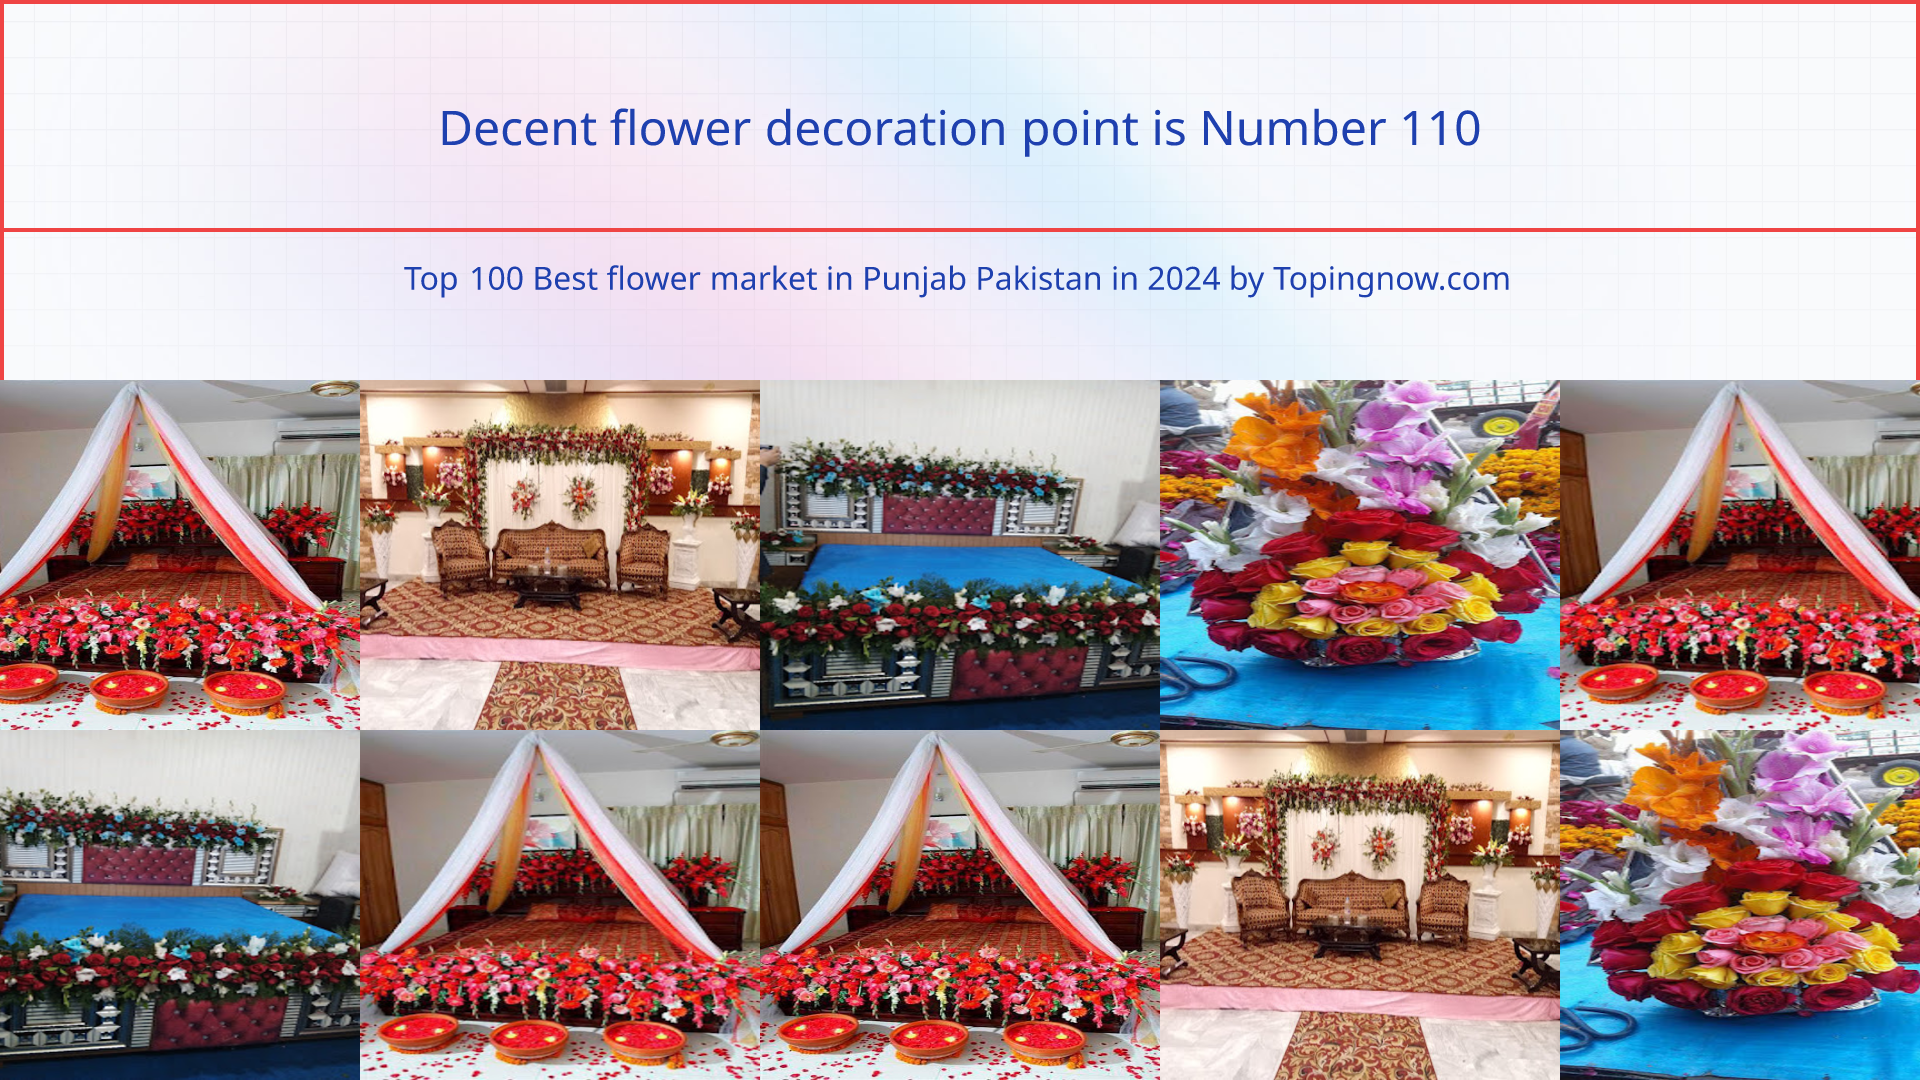 Decent flower decoration point: Top 100 Best flower market in Punjab Pakistan in 2024